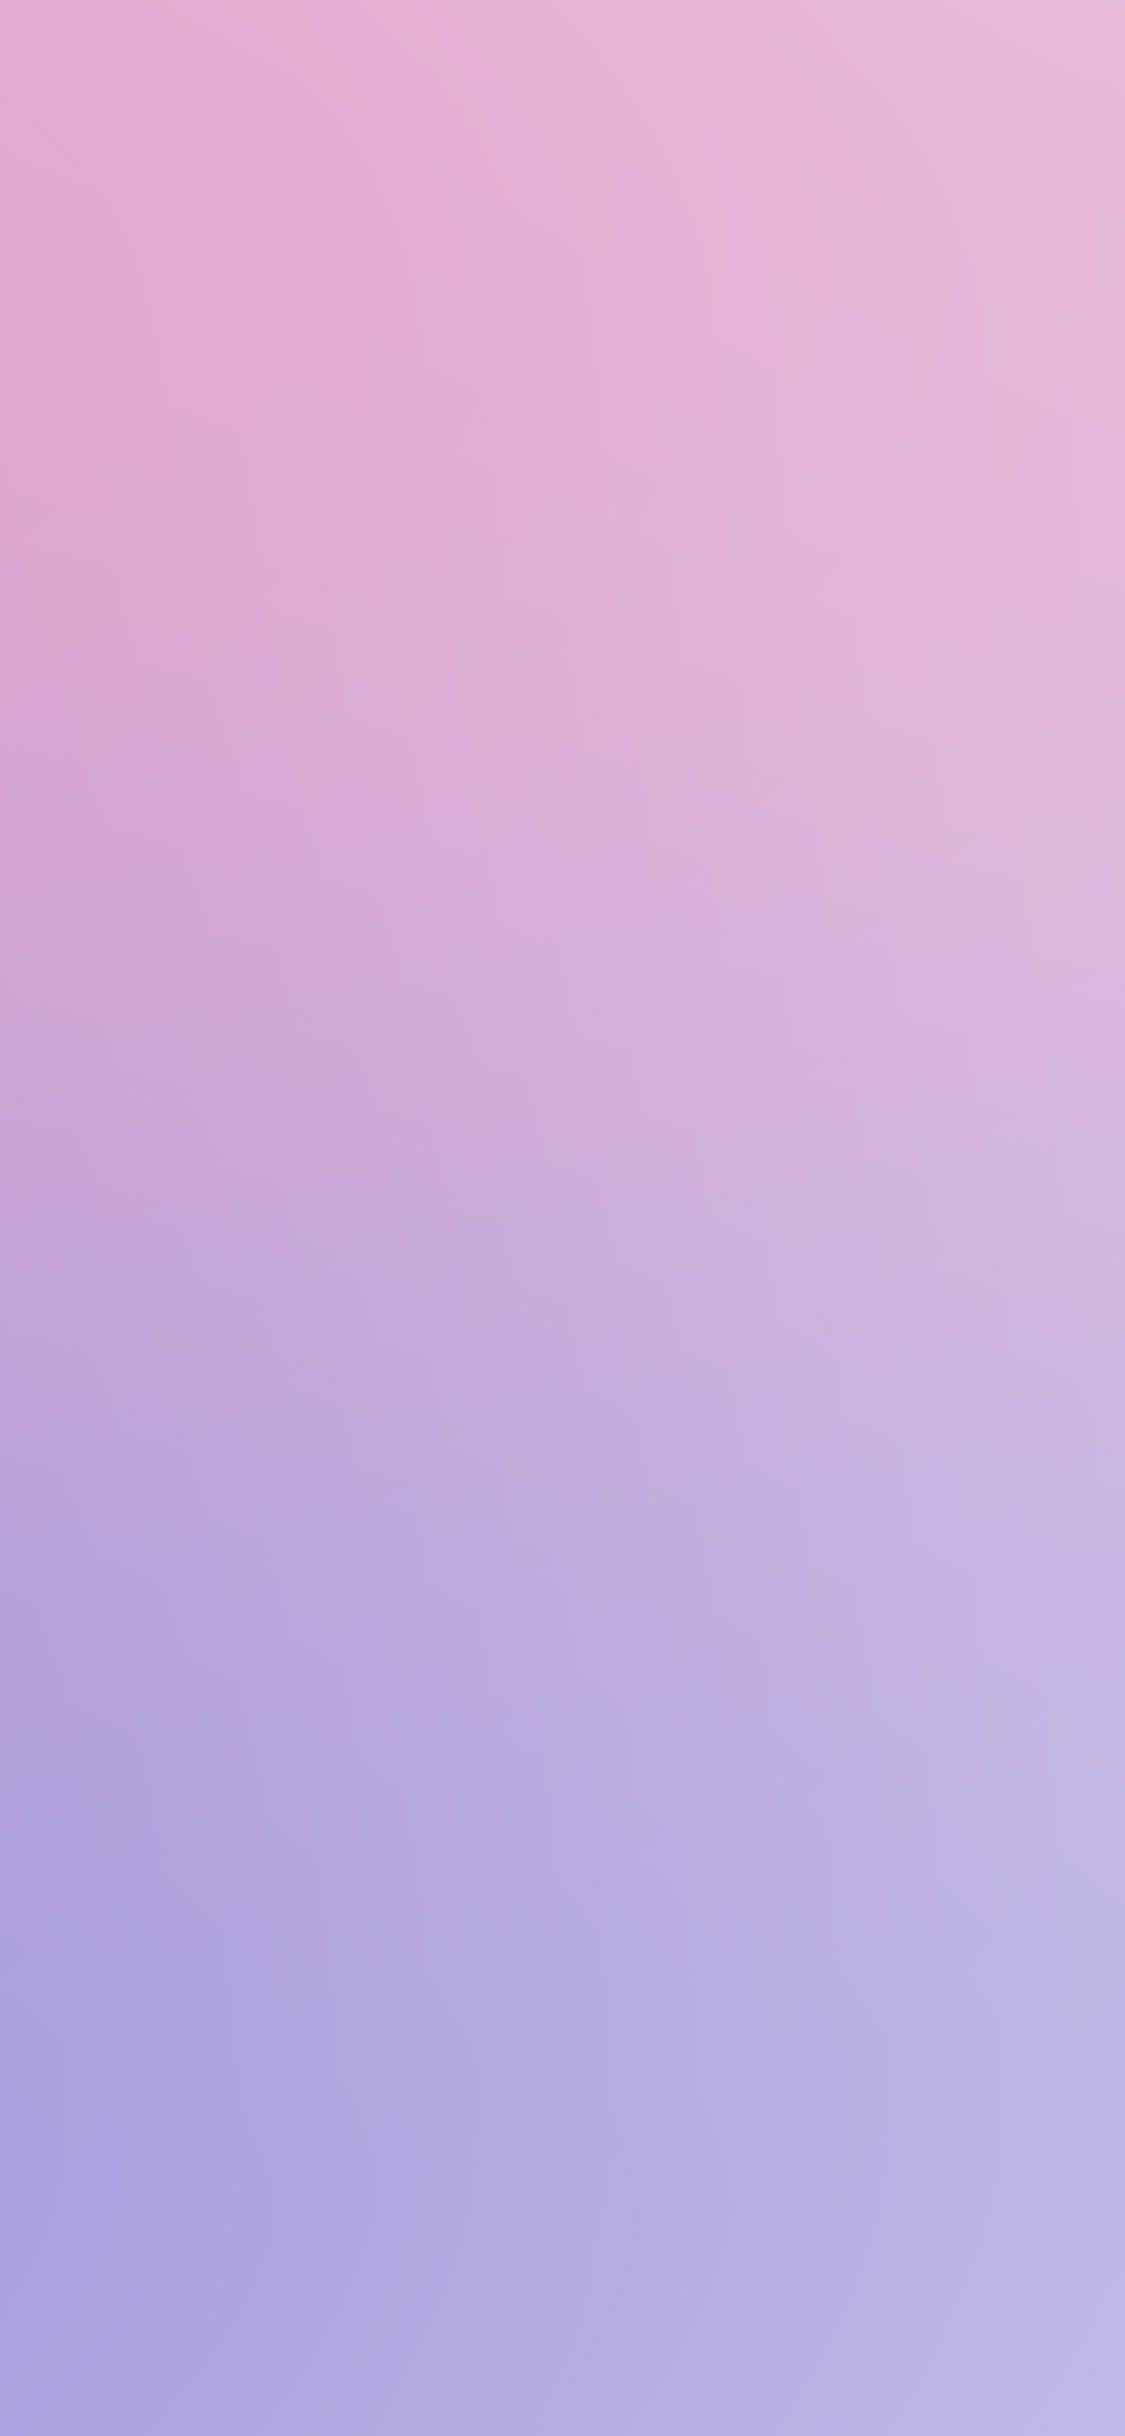 Hình nền iPhone X 1125x2436.  hồng tím mờ